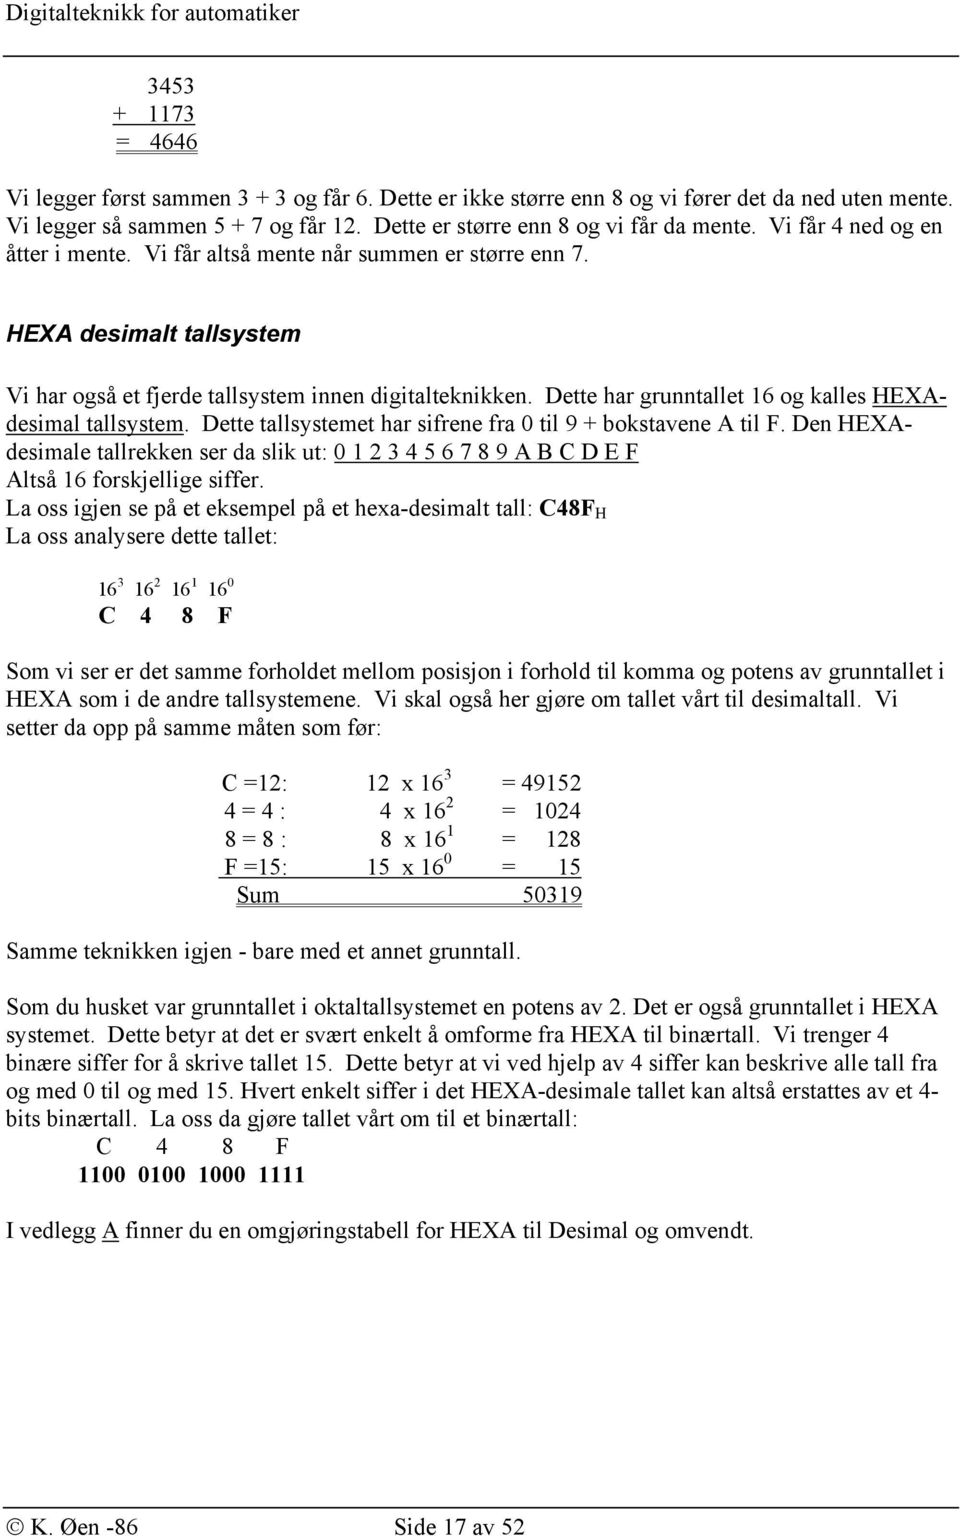 Dette har grunntallet 16 og kalles HEXAdesimal tallsystem. Dette tallsystemet har sifrene fra 0 til 9 + bokstavene A til F.